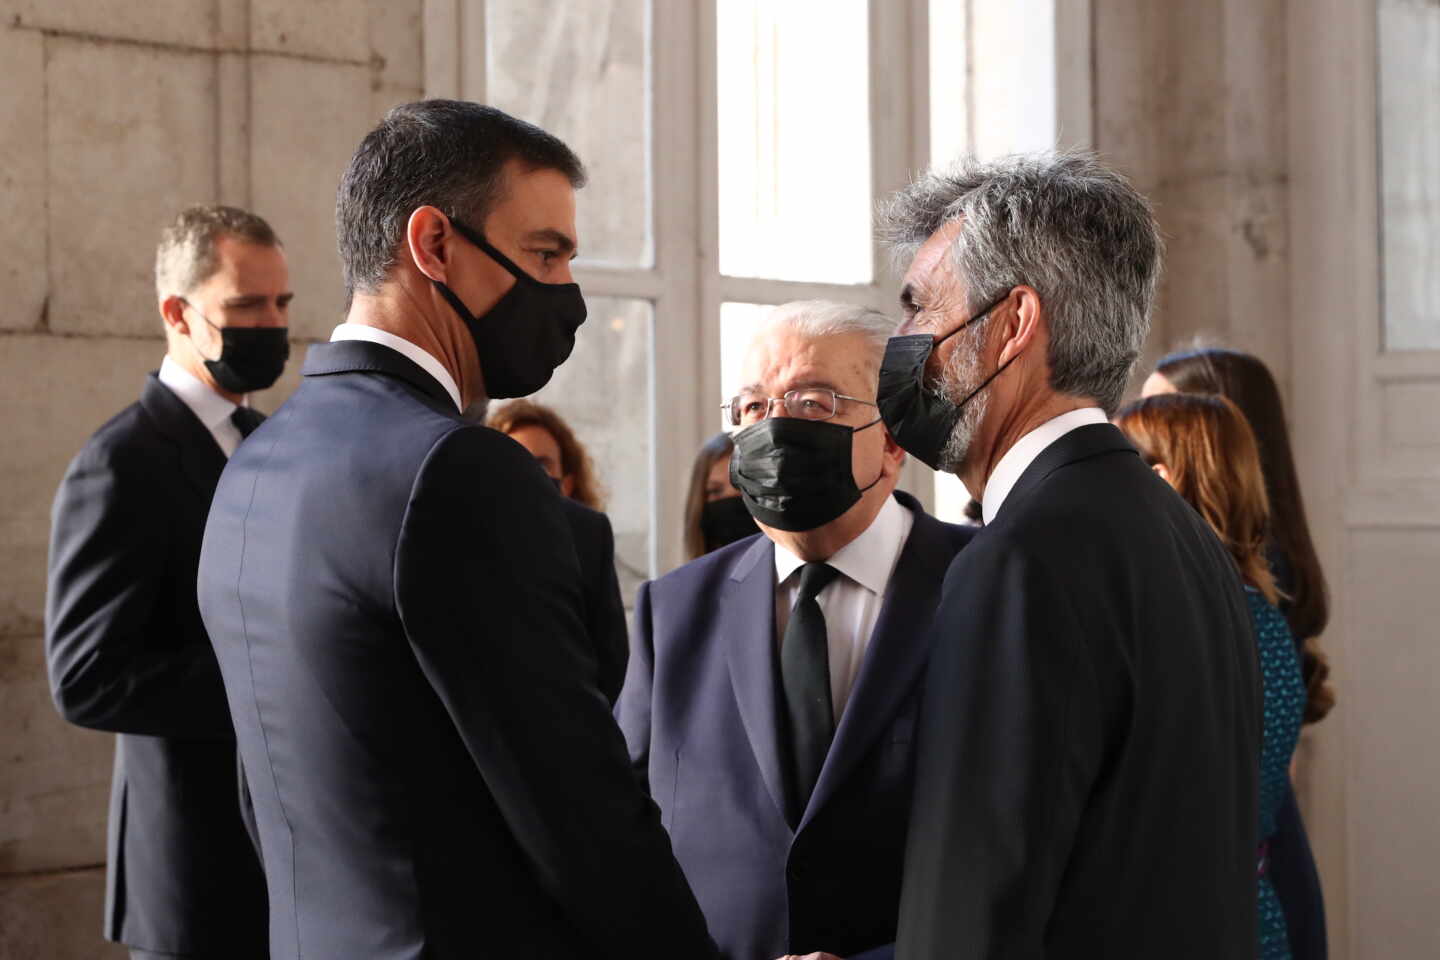 El presidente del Gobierno, Pedro Sánchez (1i), charla con el presidente del Tribunal Supremo y del Consejo General del Poder Judicial, Carlos Lesmes, en una imagen de archivo.